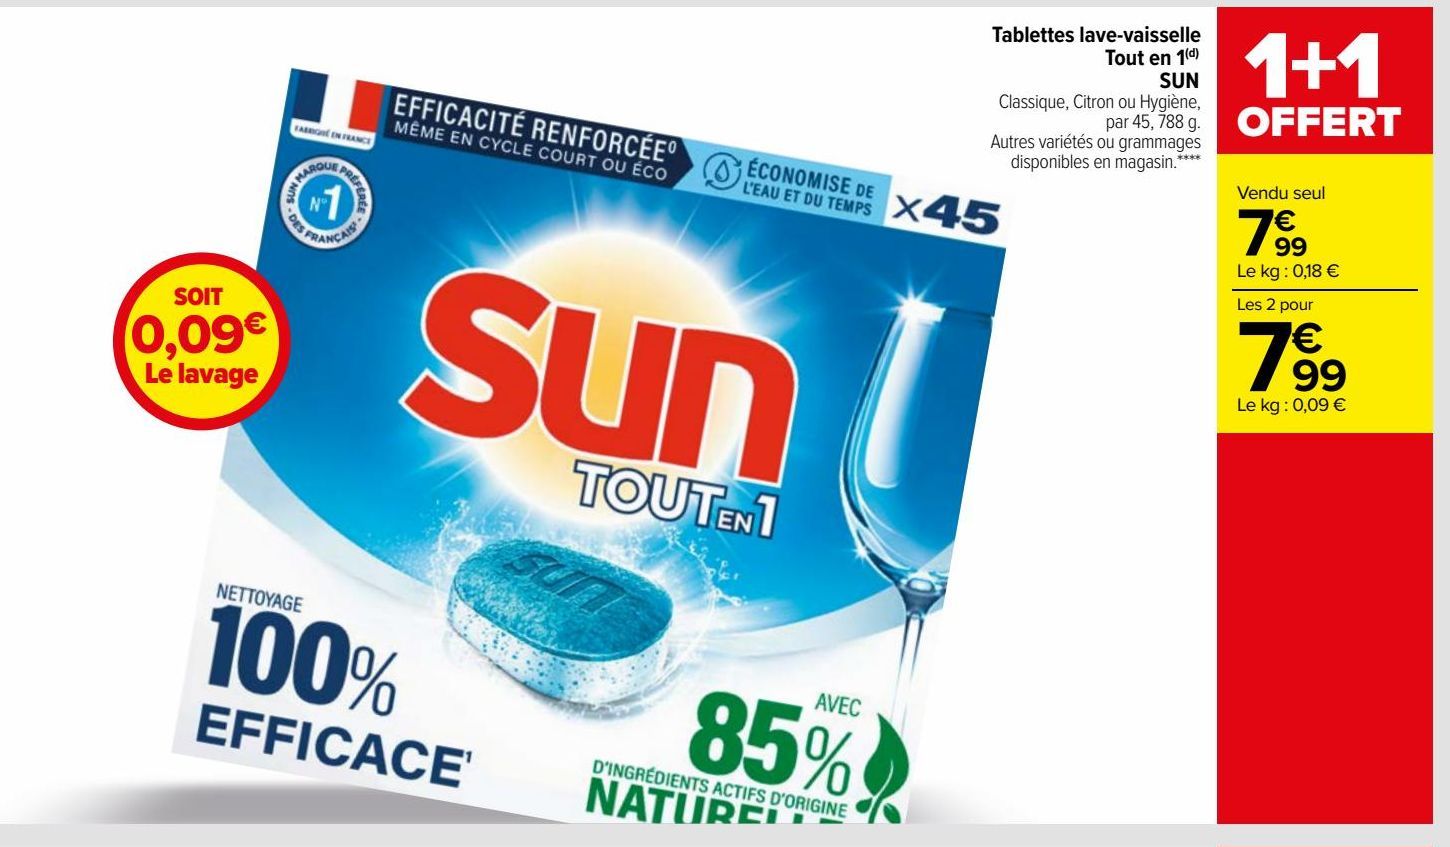 Tablettes lave-vaisselle tout en 1 Sun